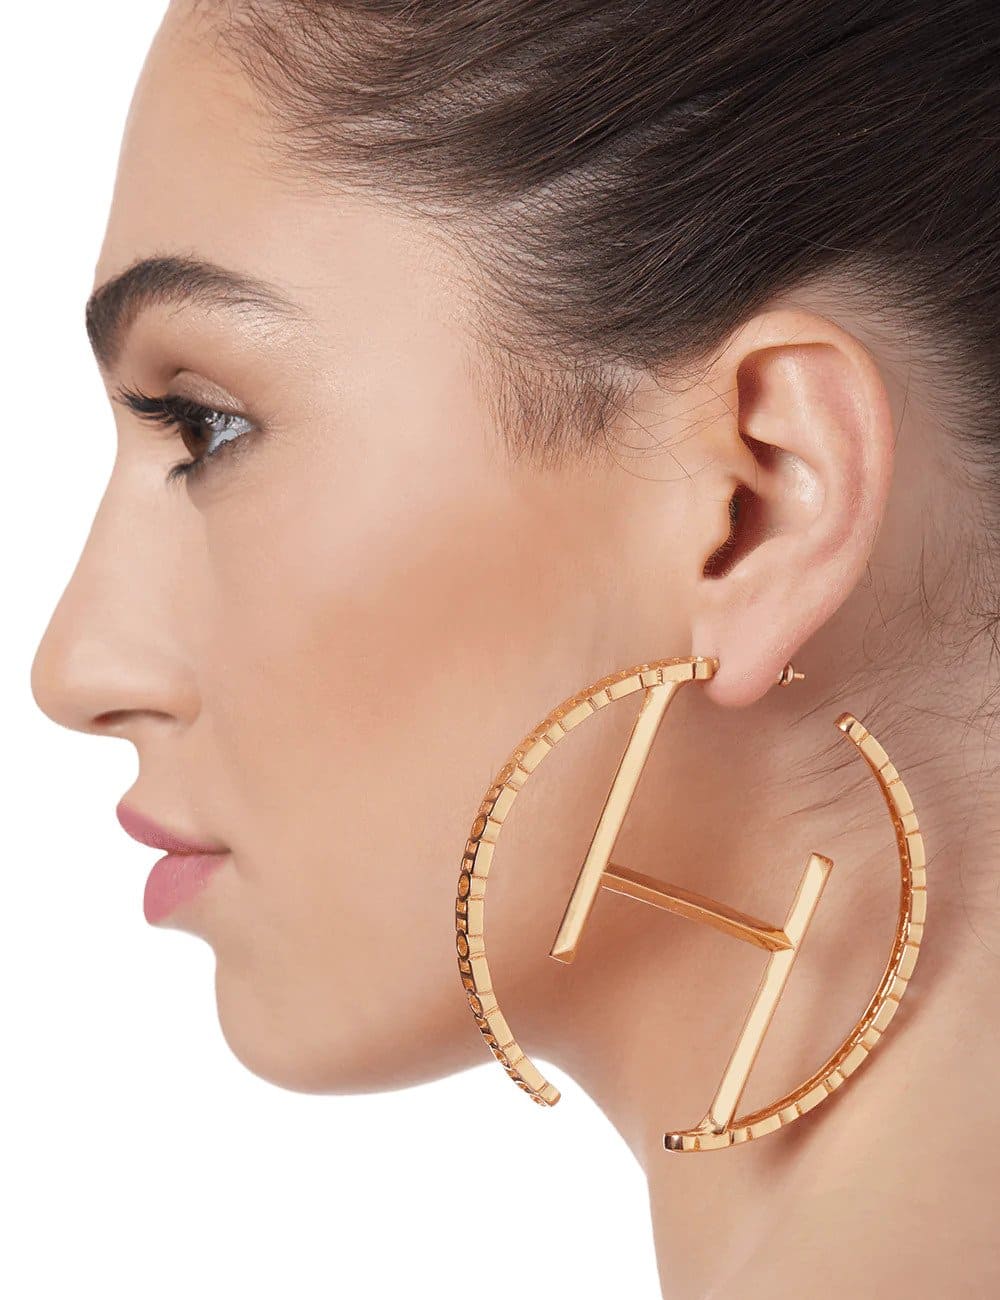 women best earrings Best Earrings For Women In India  The Economic Times